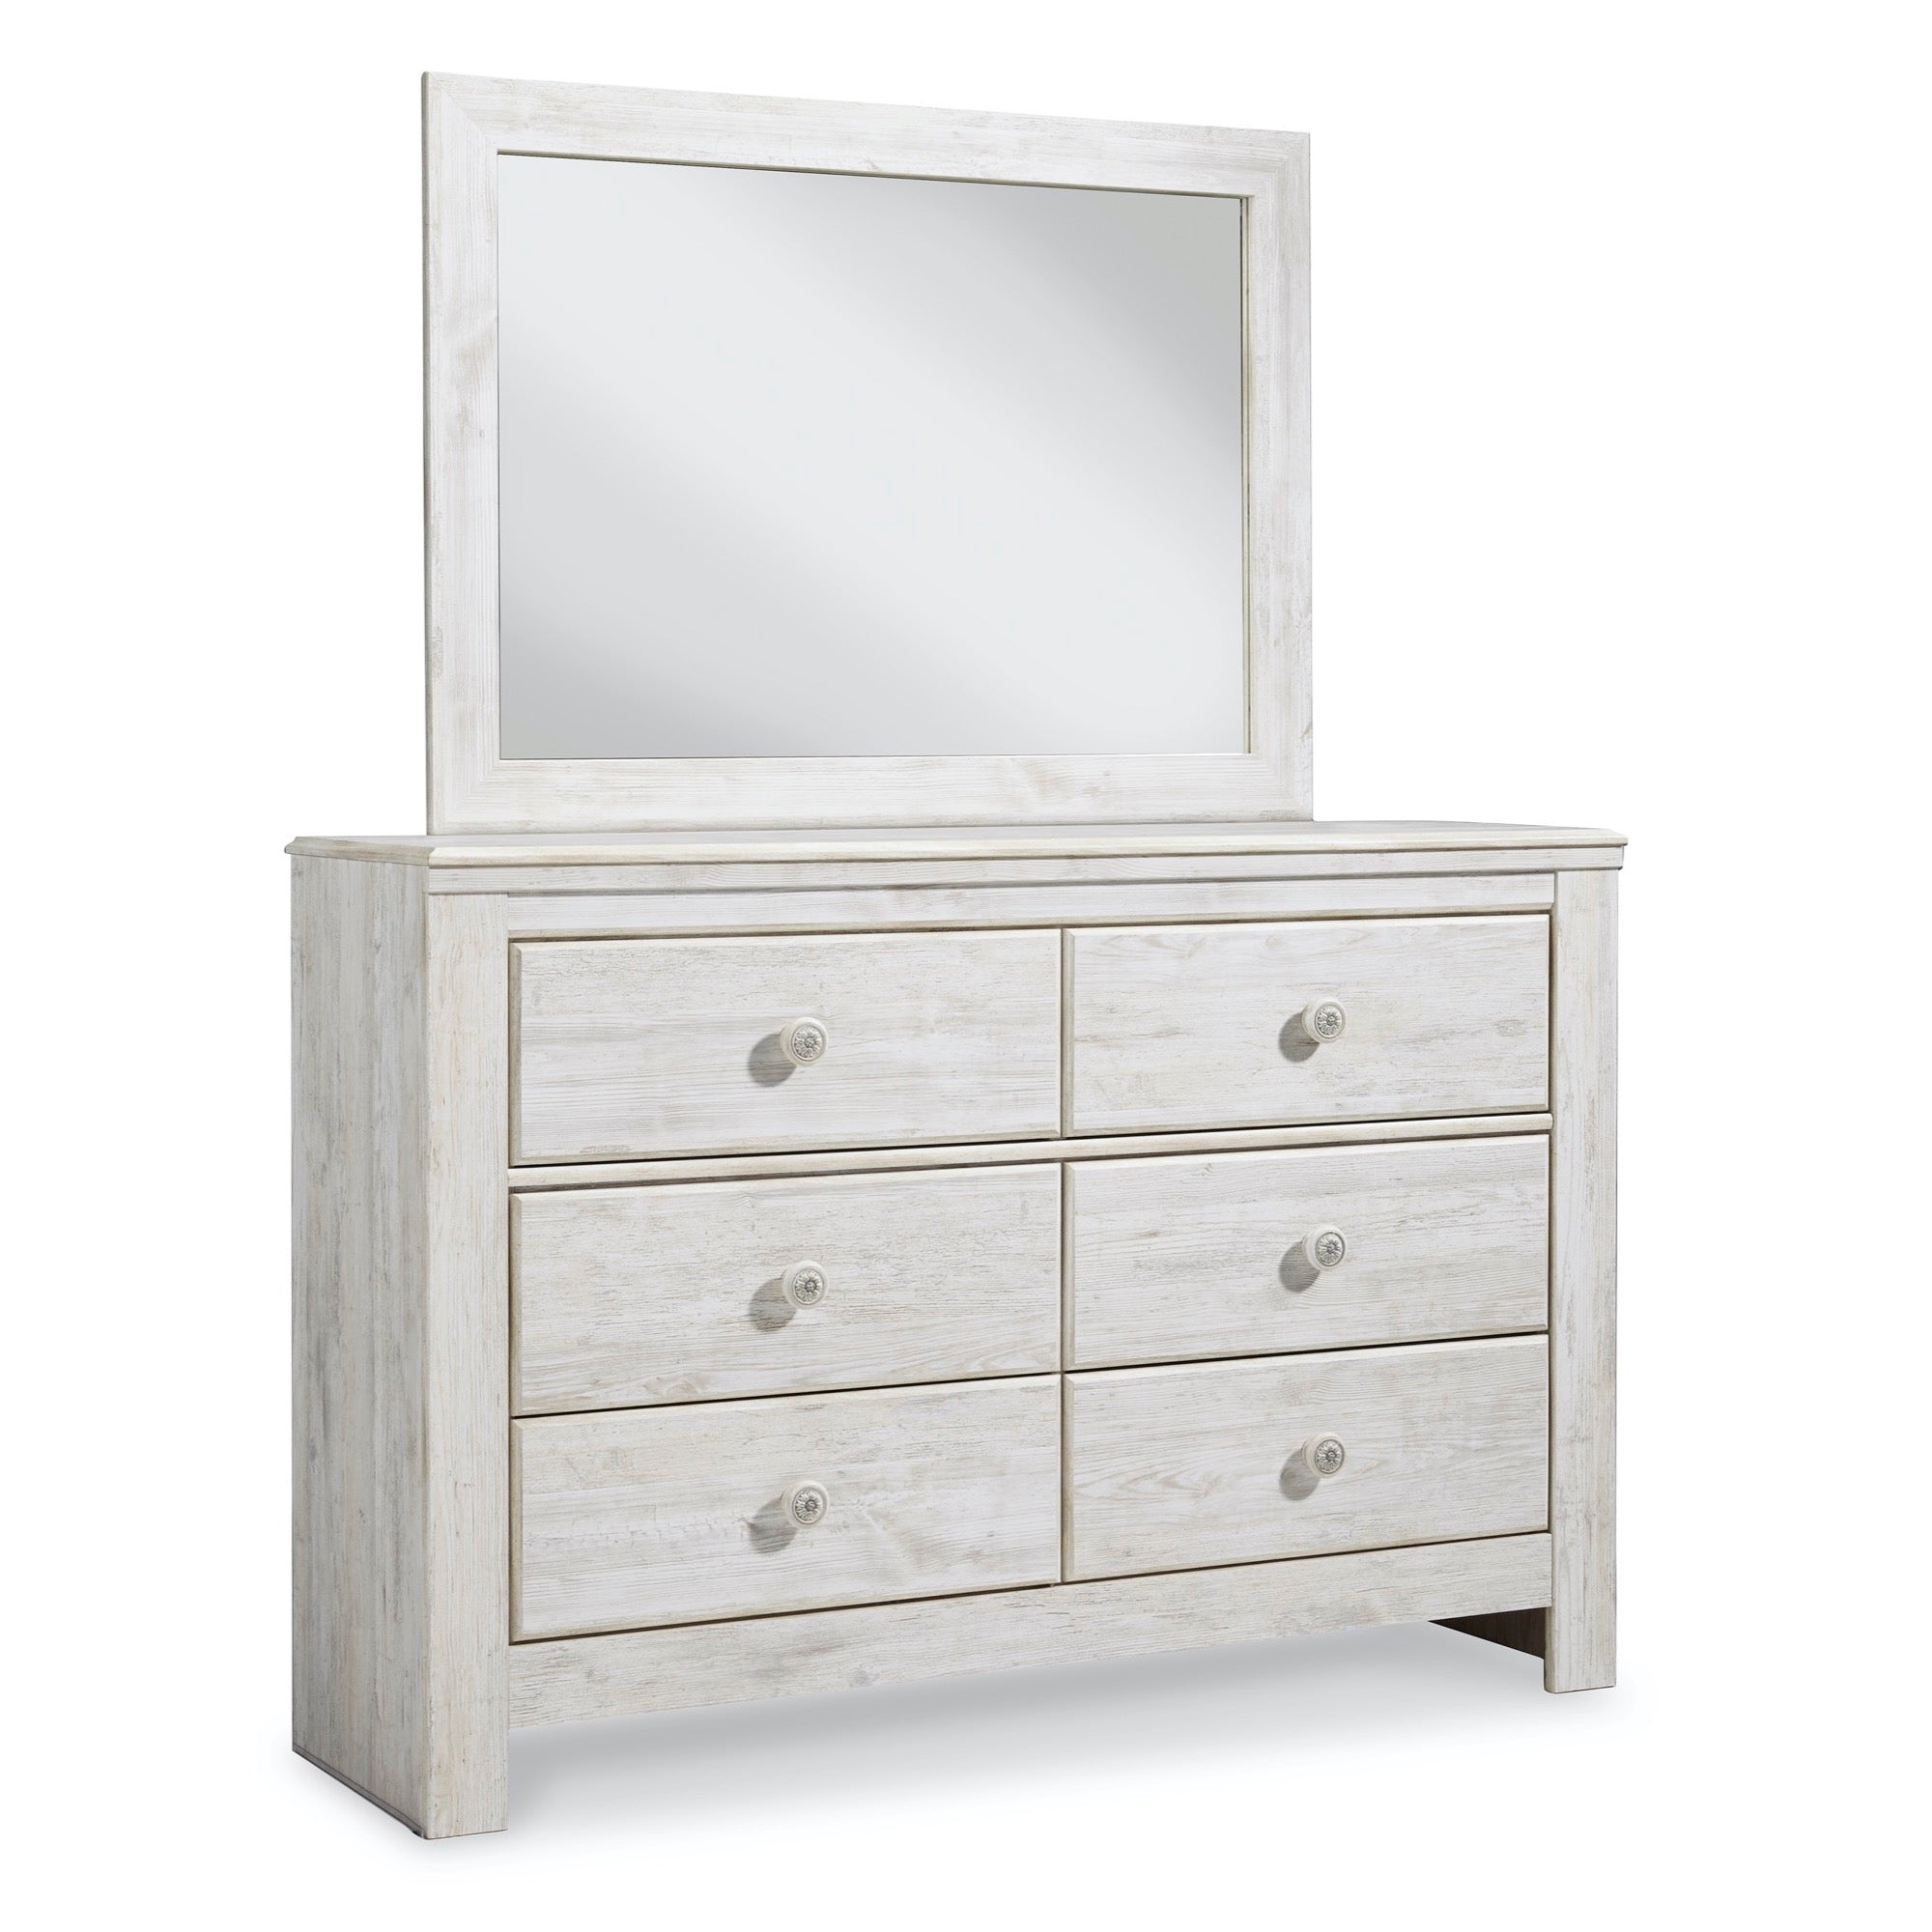 Paxberry Dresser & Mirror